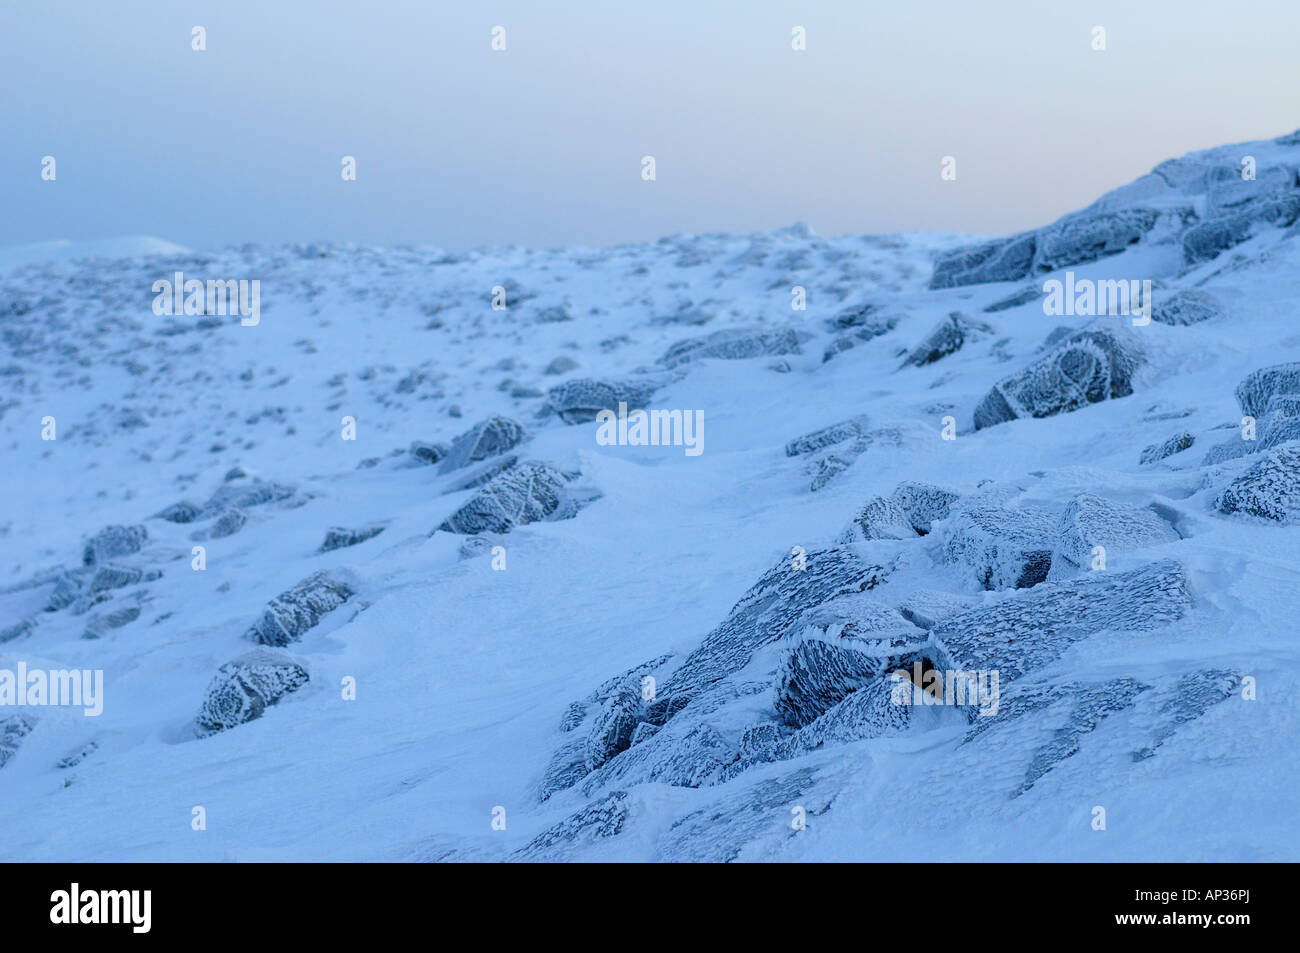 Snowy landscape in Sweden Stock Photo